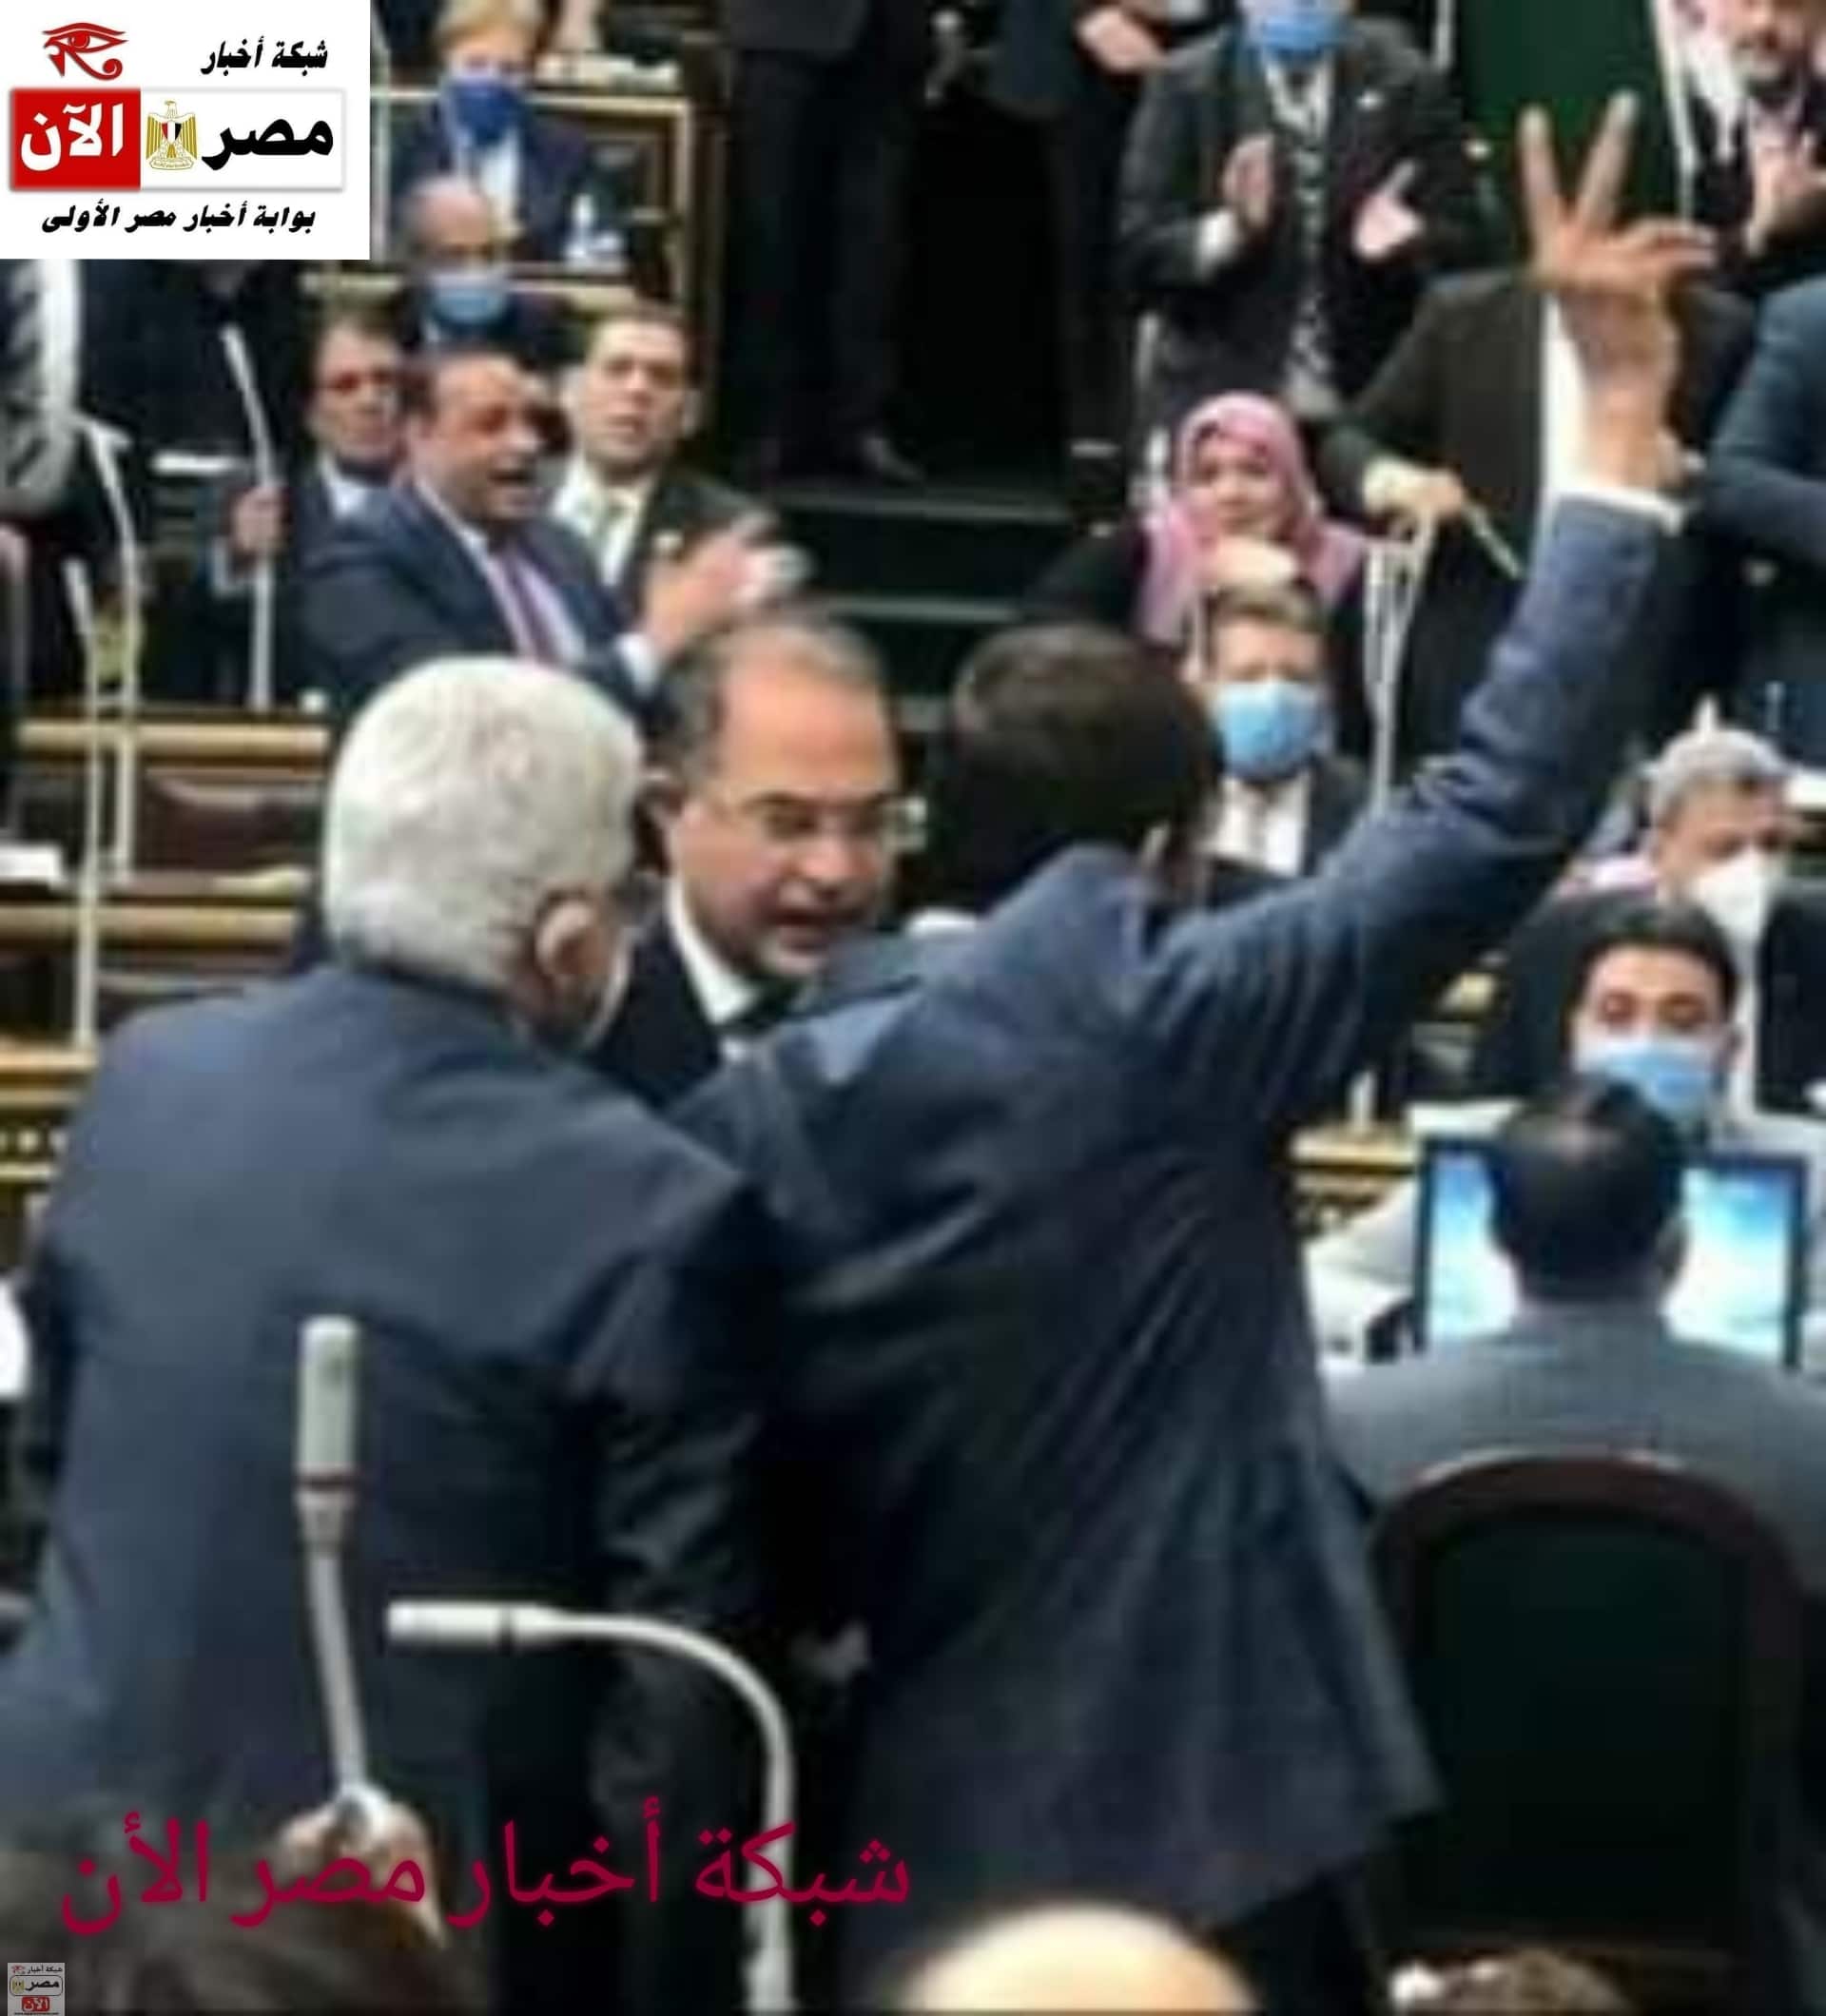 لحظة خروج النائب محمد عبد العليم من قاعة المجلس